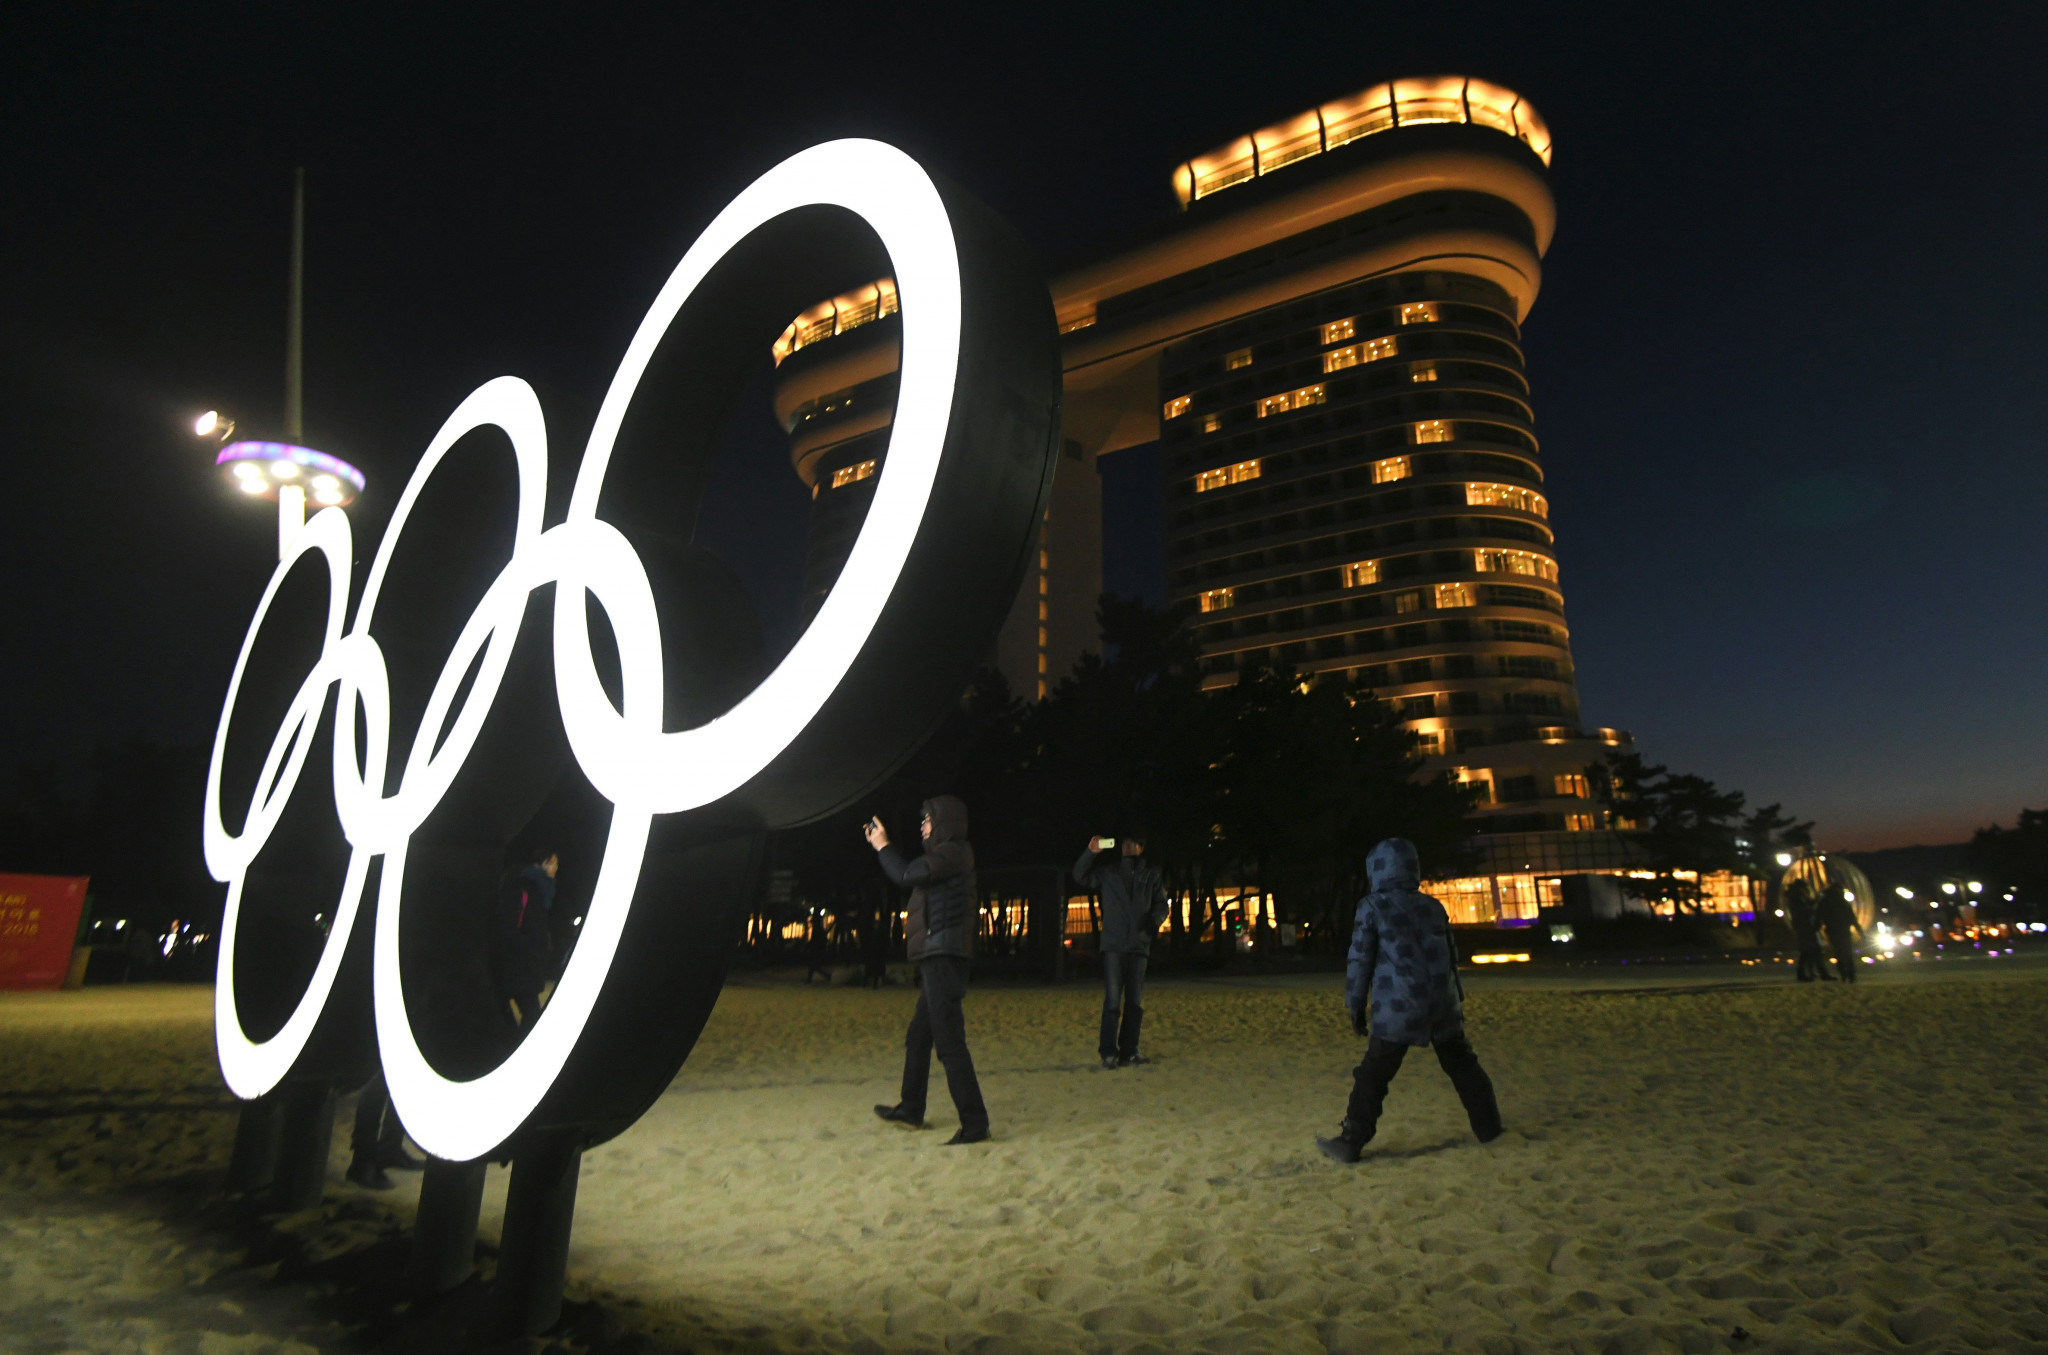 IOC meetings begin as athletes arrive at Pyeongchang 2018